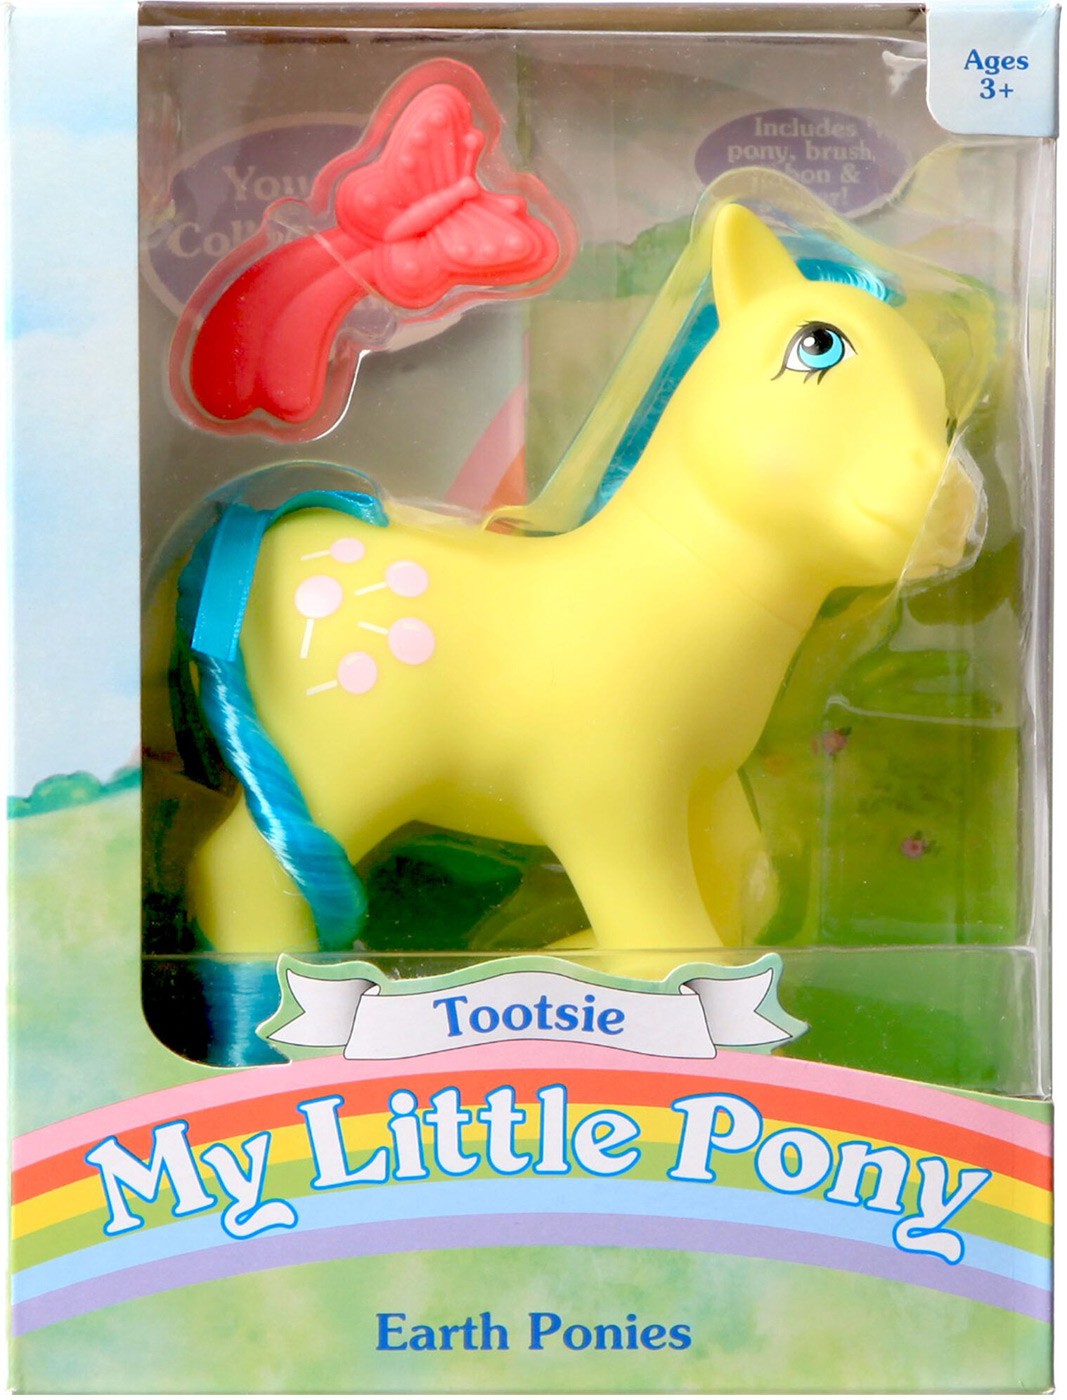 My Little Pony Retro / Classic Earth Ponies - Tootsie